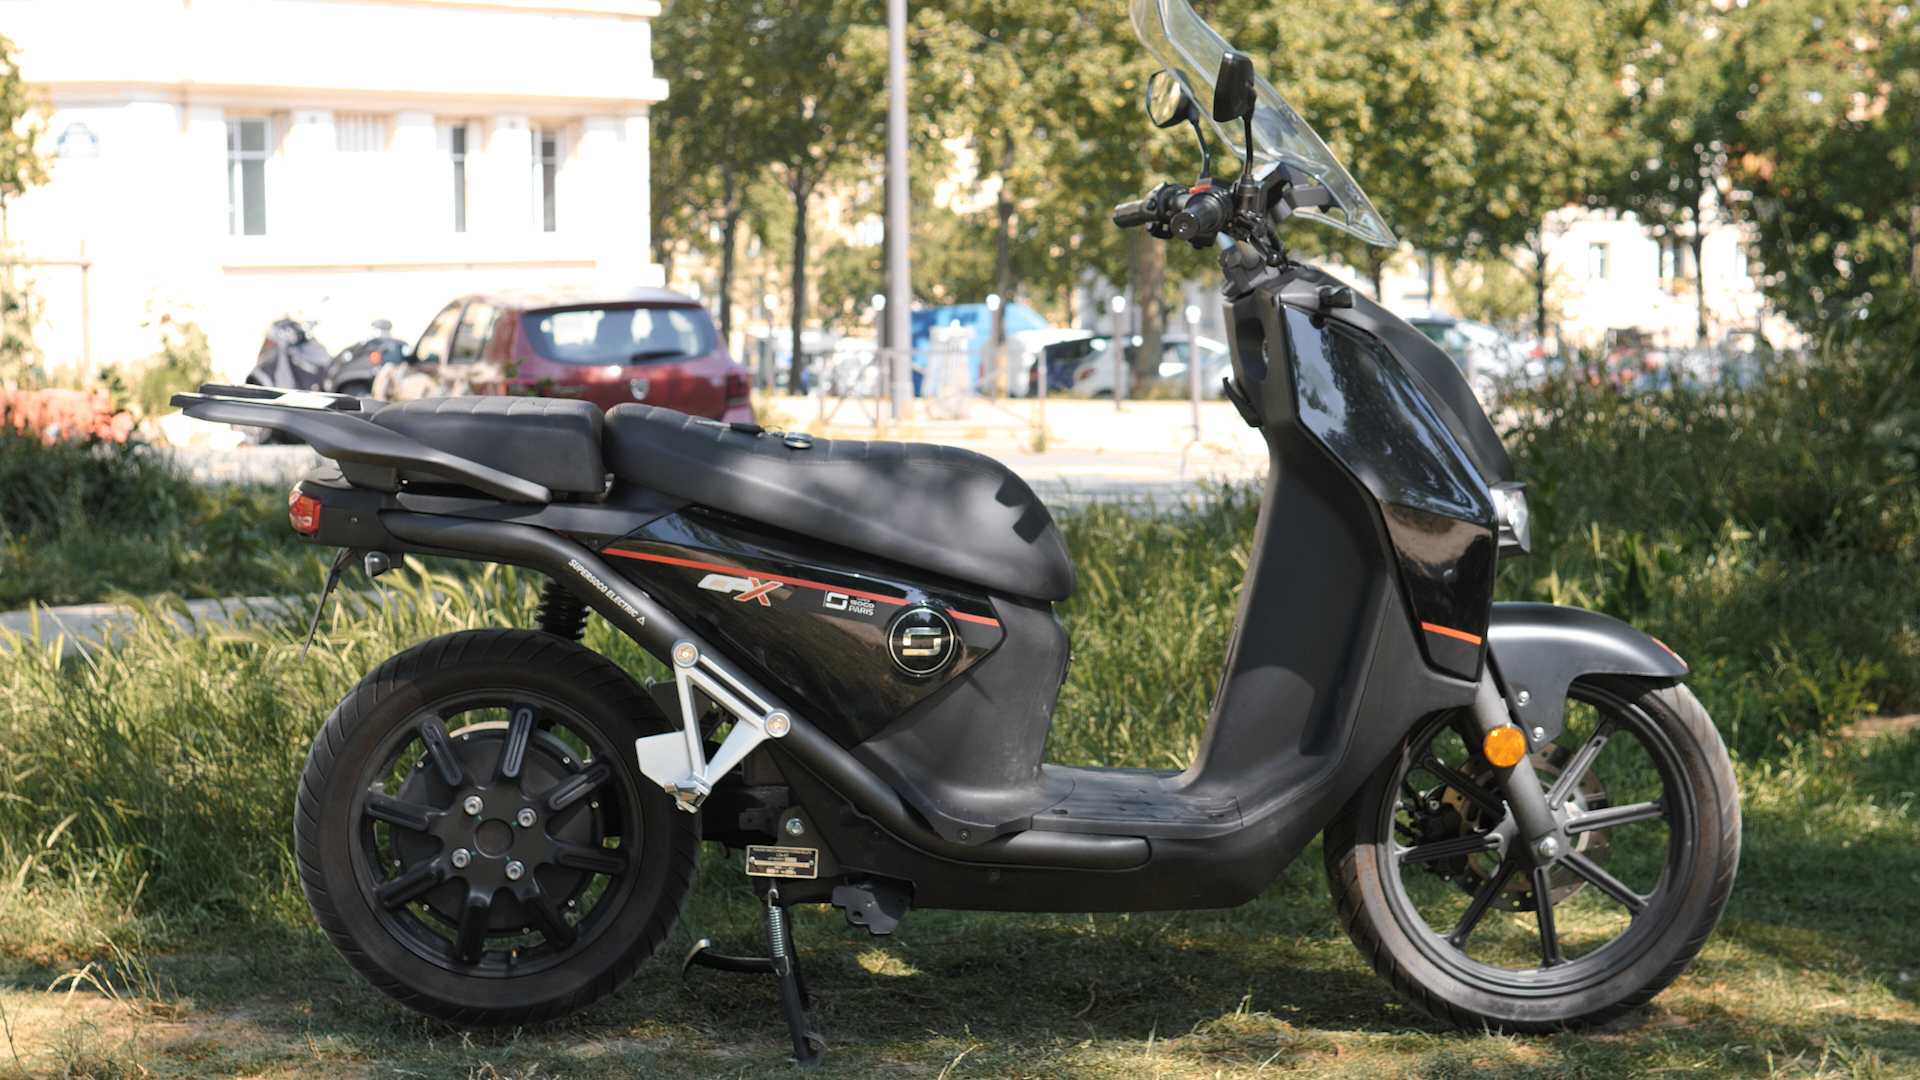 Scooter électrique abordable avec frein à disque avec CBS, éclairage LED -  Chine Meilleure moto électrique, deux vélos électriques Wheeler